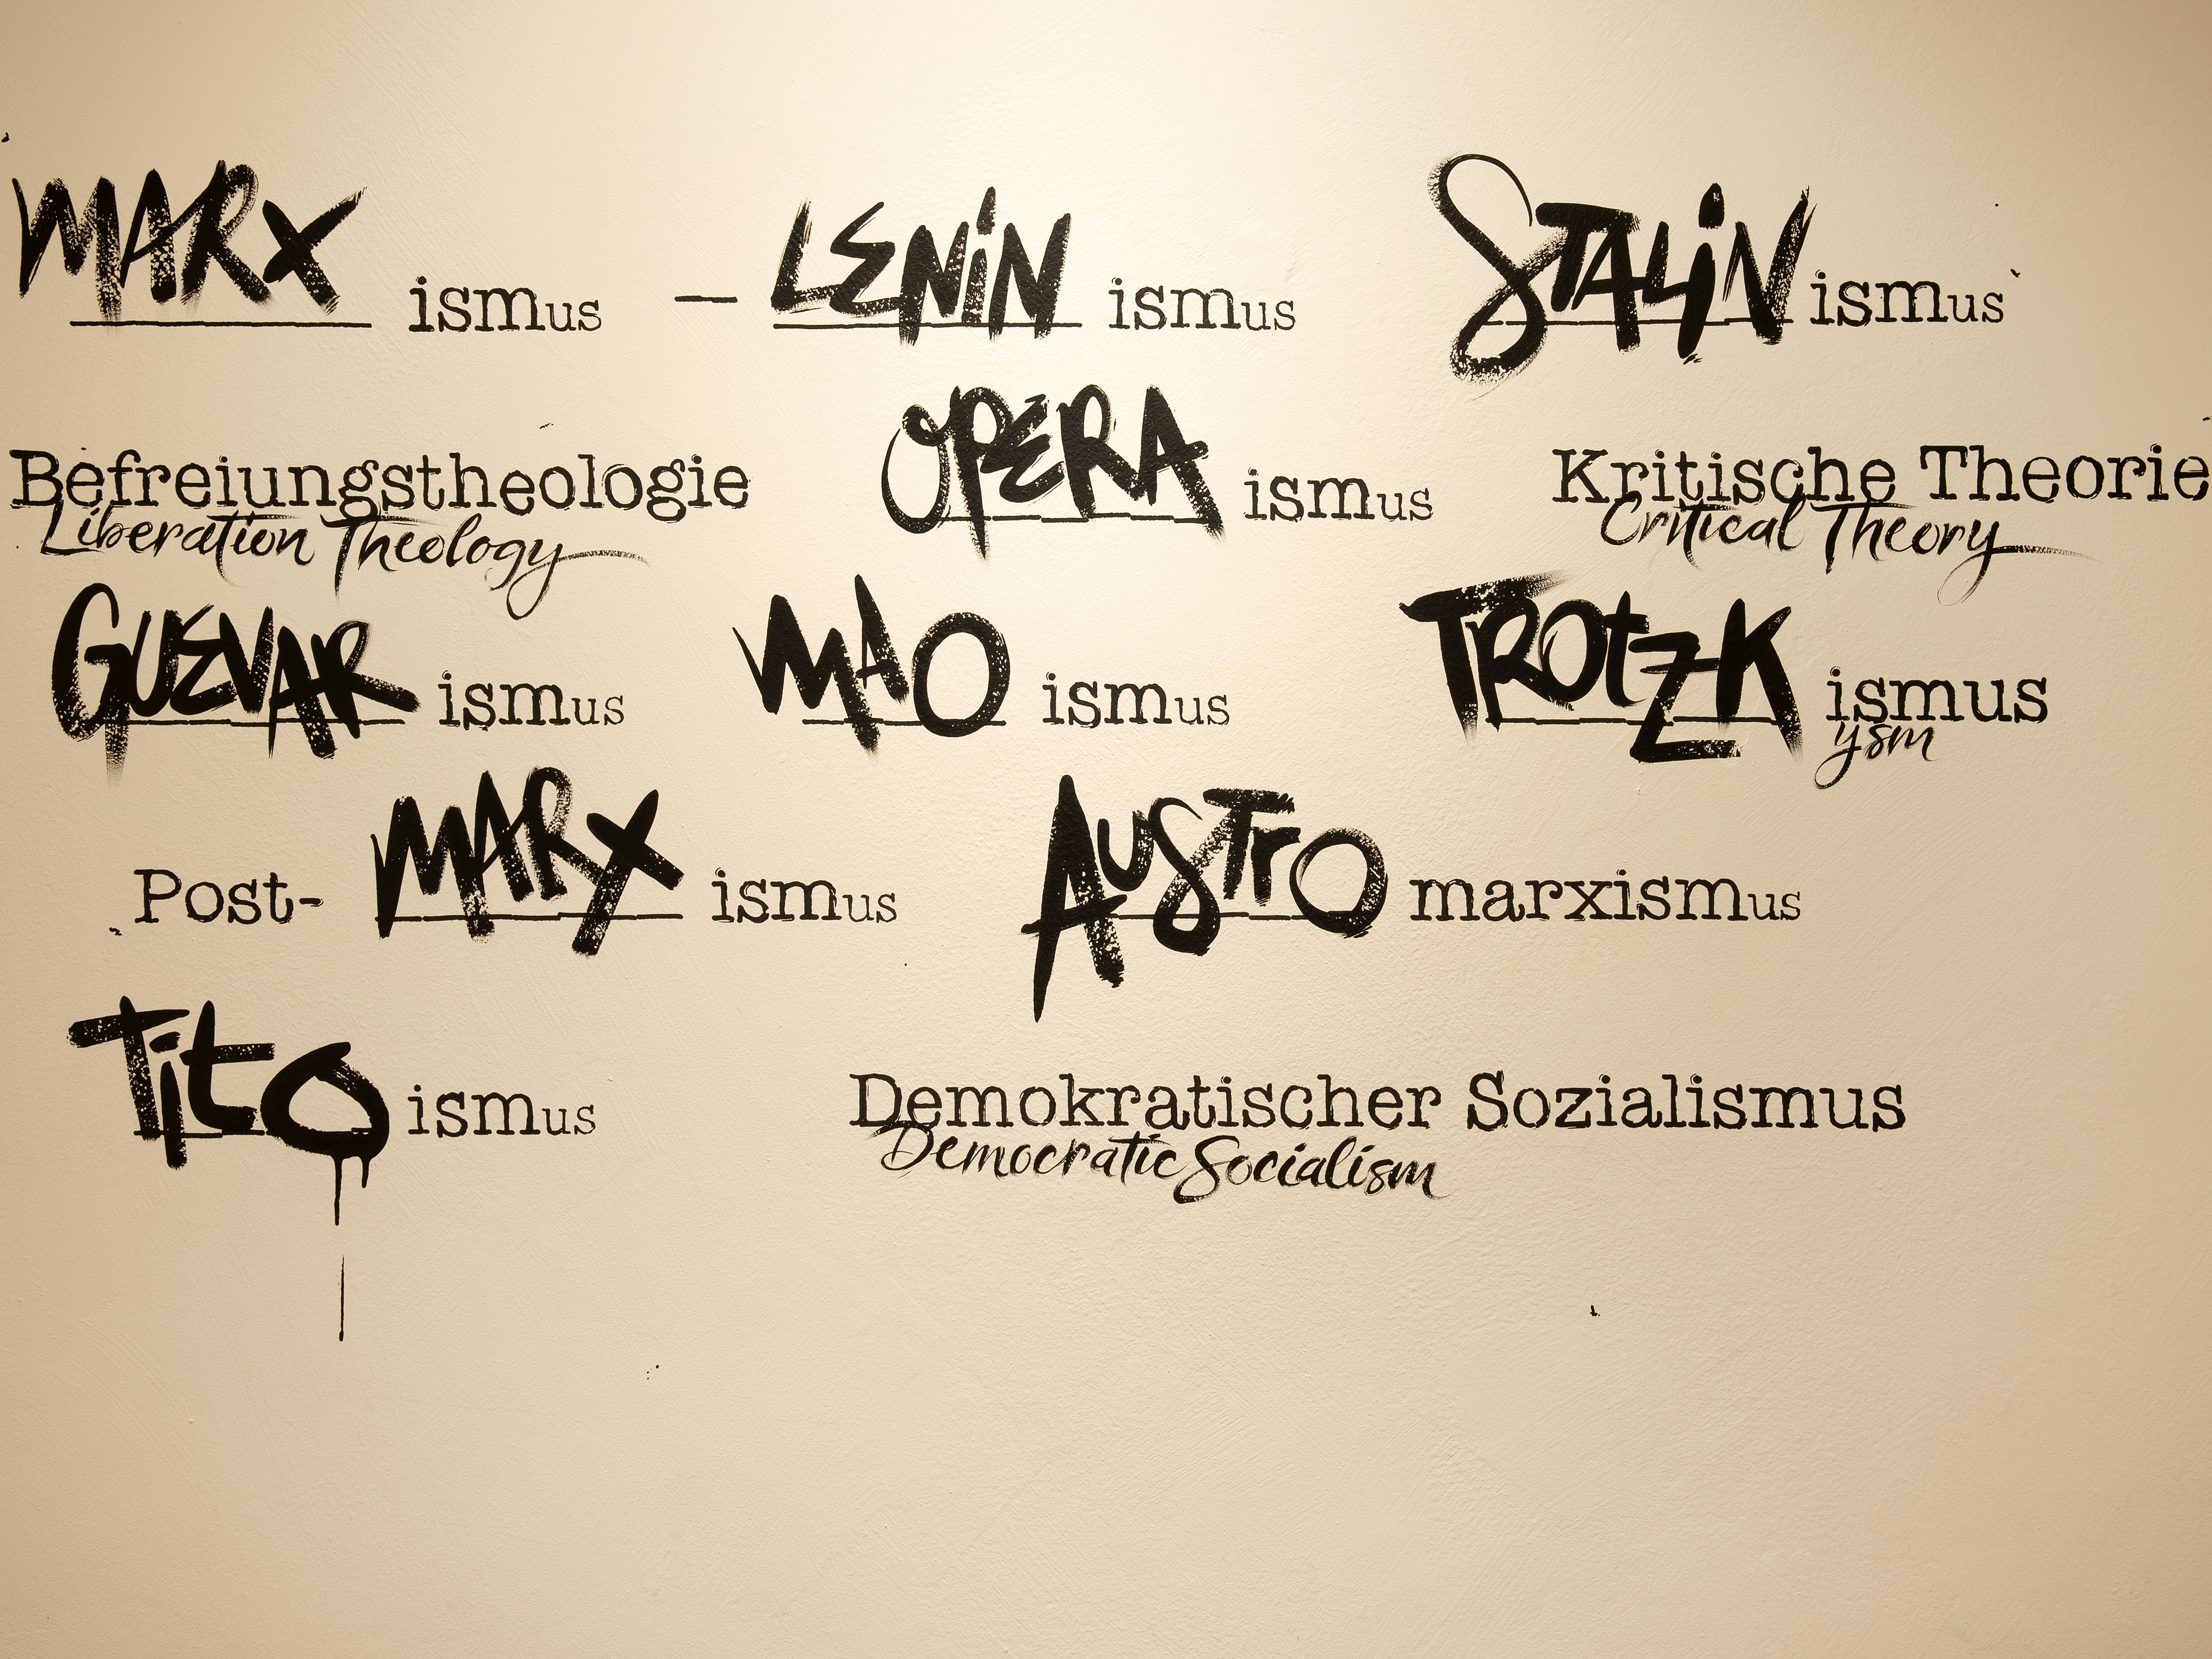 Das Foto zeigt eine Wand mit mehreren Schlagwörtern. Diese beschreiben unterschiedliche Ideologien, die sich Marx‘ Theorien zur Grundlage nehmen.